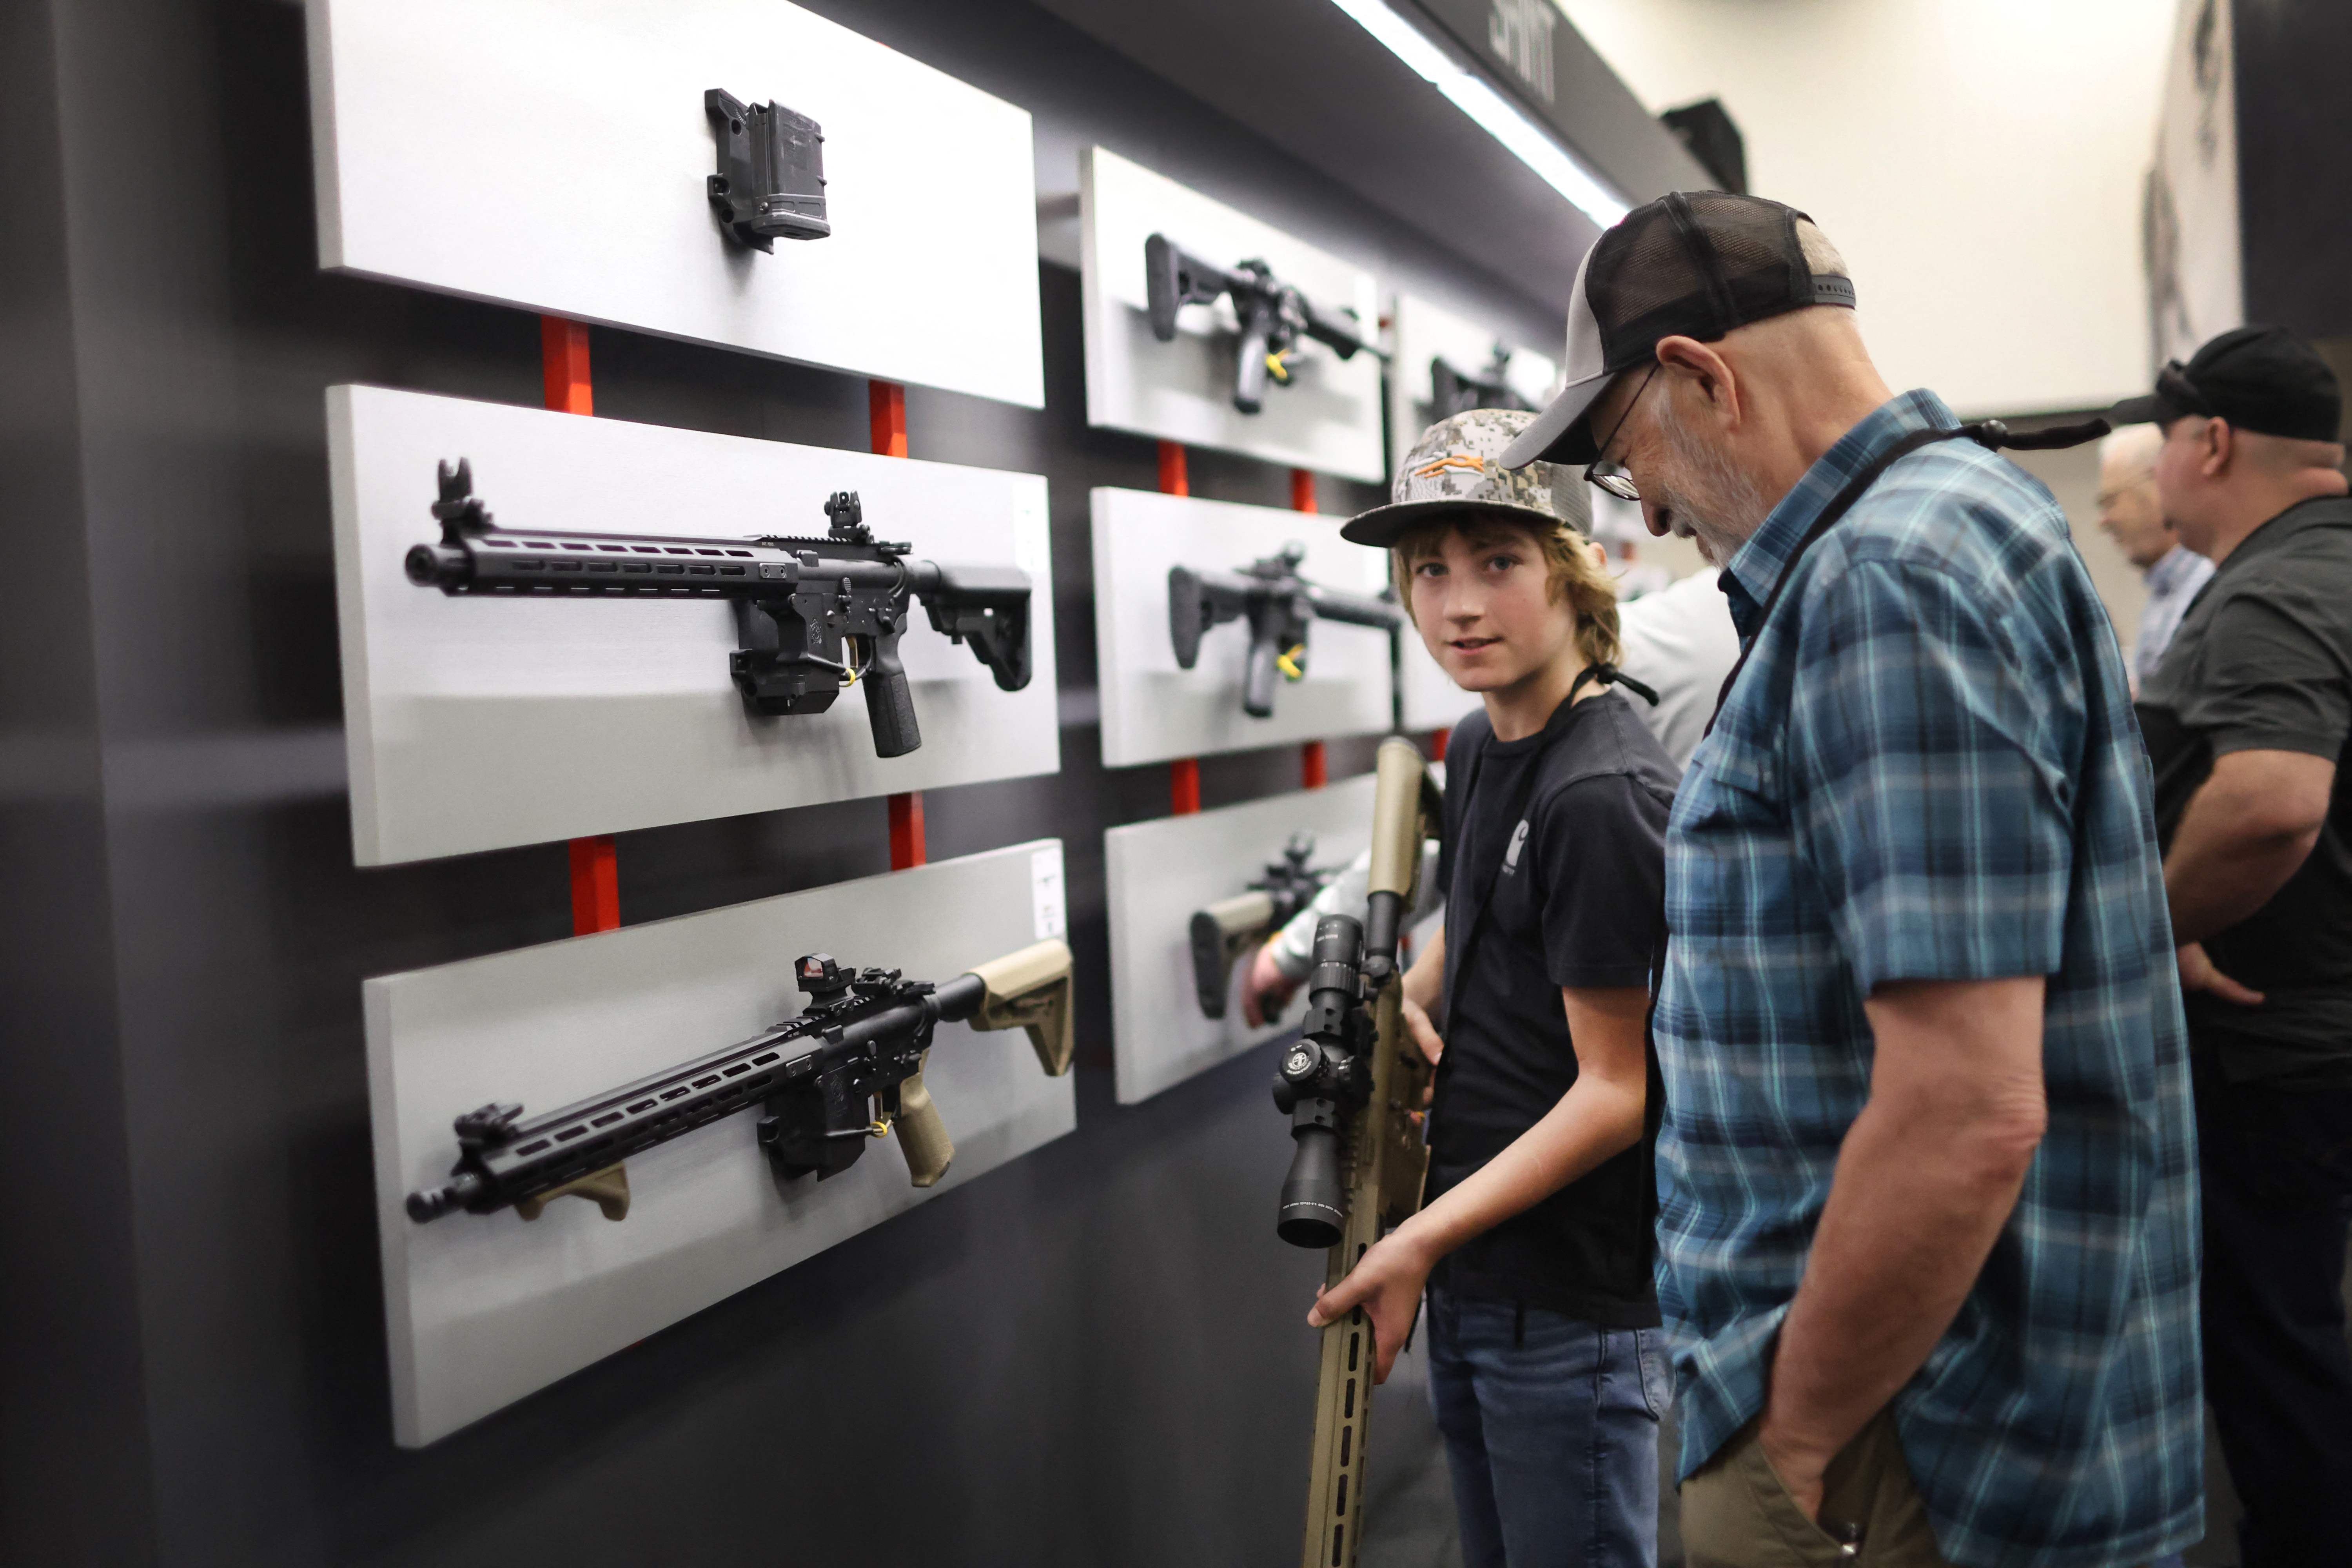 15일 미국 인디애나주 인디애나폴리스에서 열린 전미소총협회(NRA) 연례 행사에서 참석자들이 총기를 살펴보고 있다. AP 연합뉴스